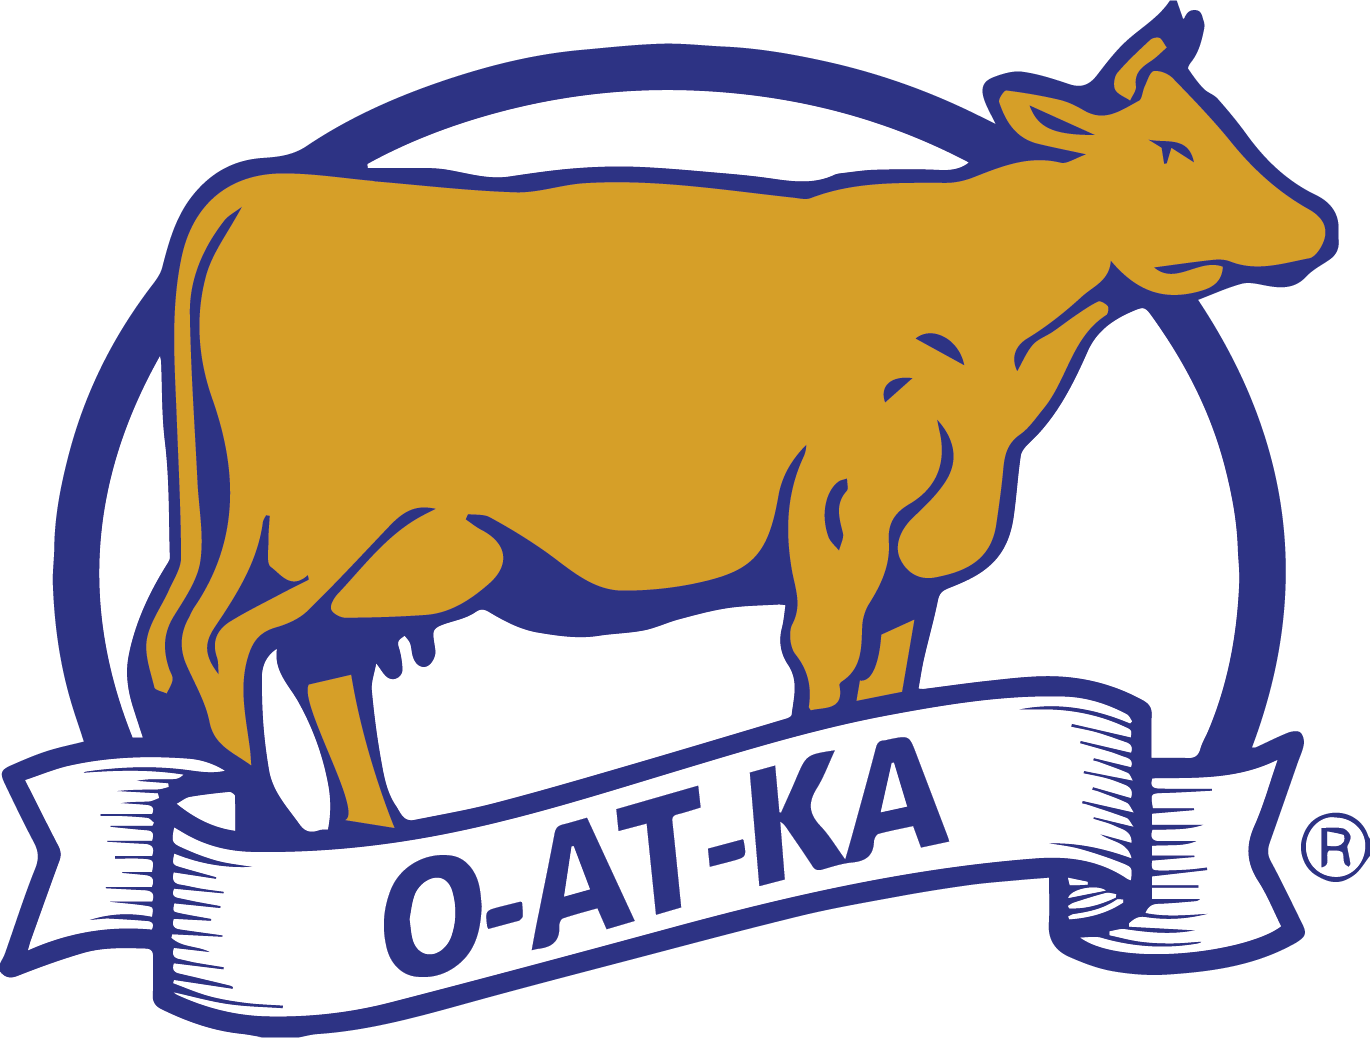 O-AT-KA